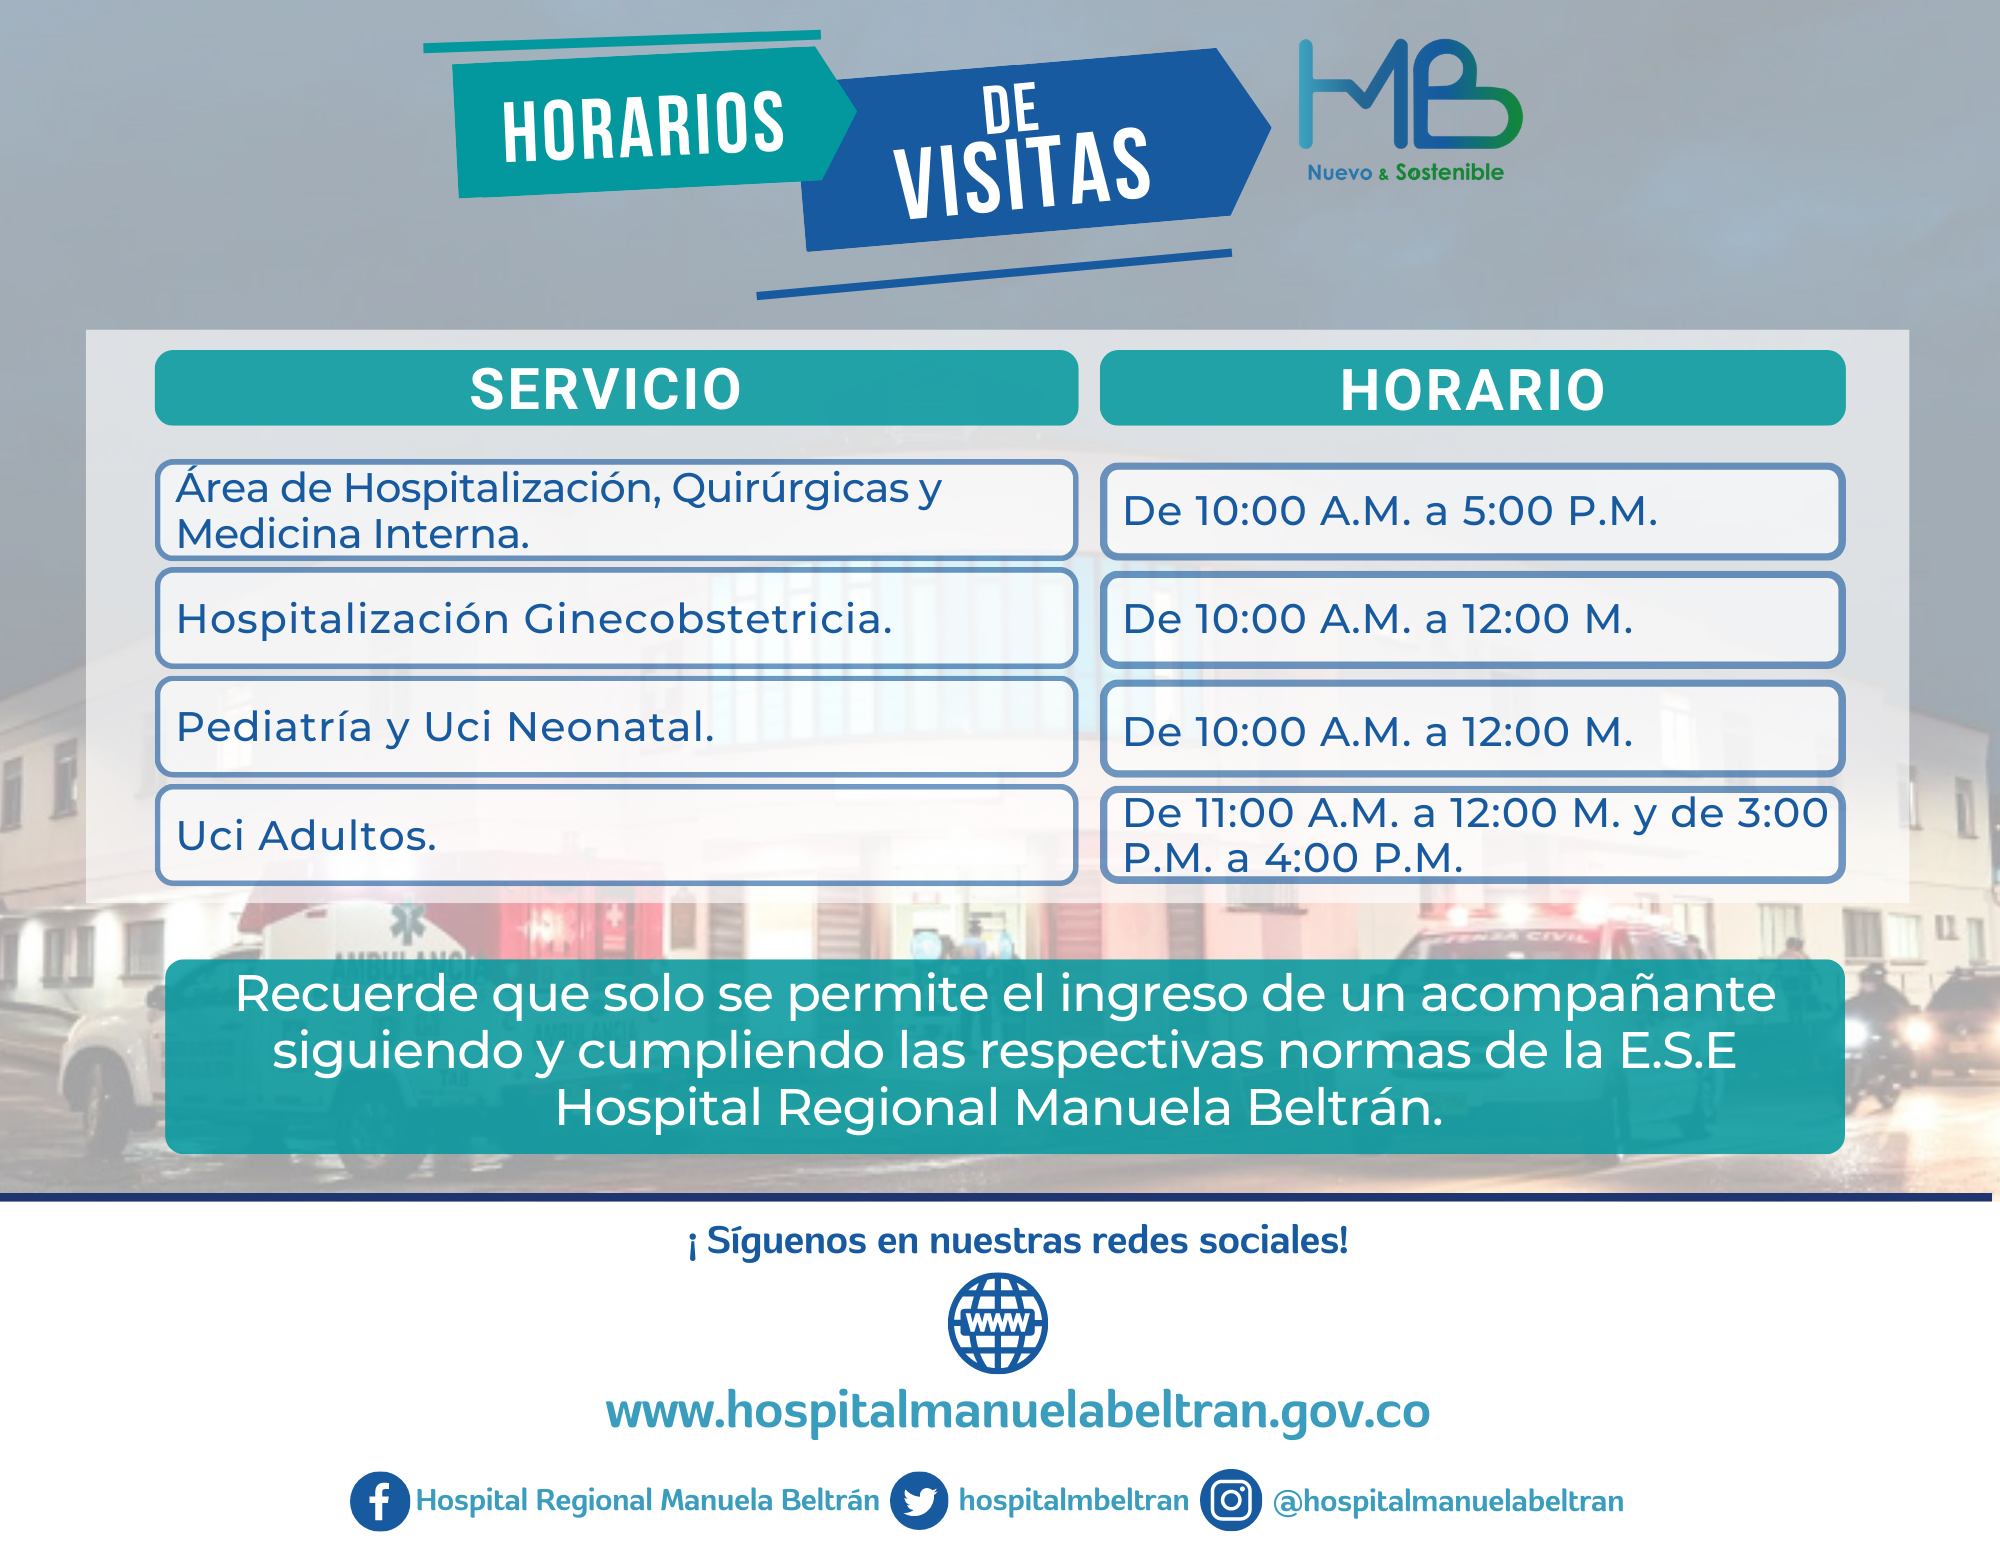 INFORMACION SOBRE HORARIOS VISITAS A LOS DIFERENTES SERVICIOS DEL HOSPITAL MANUELA BELTRÁN